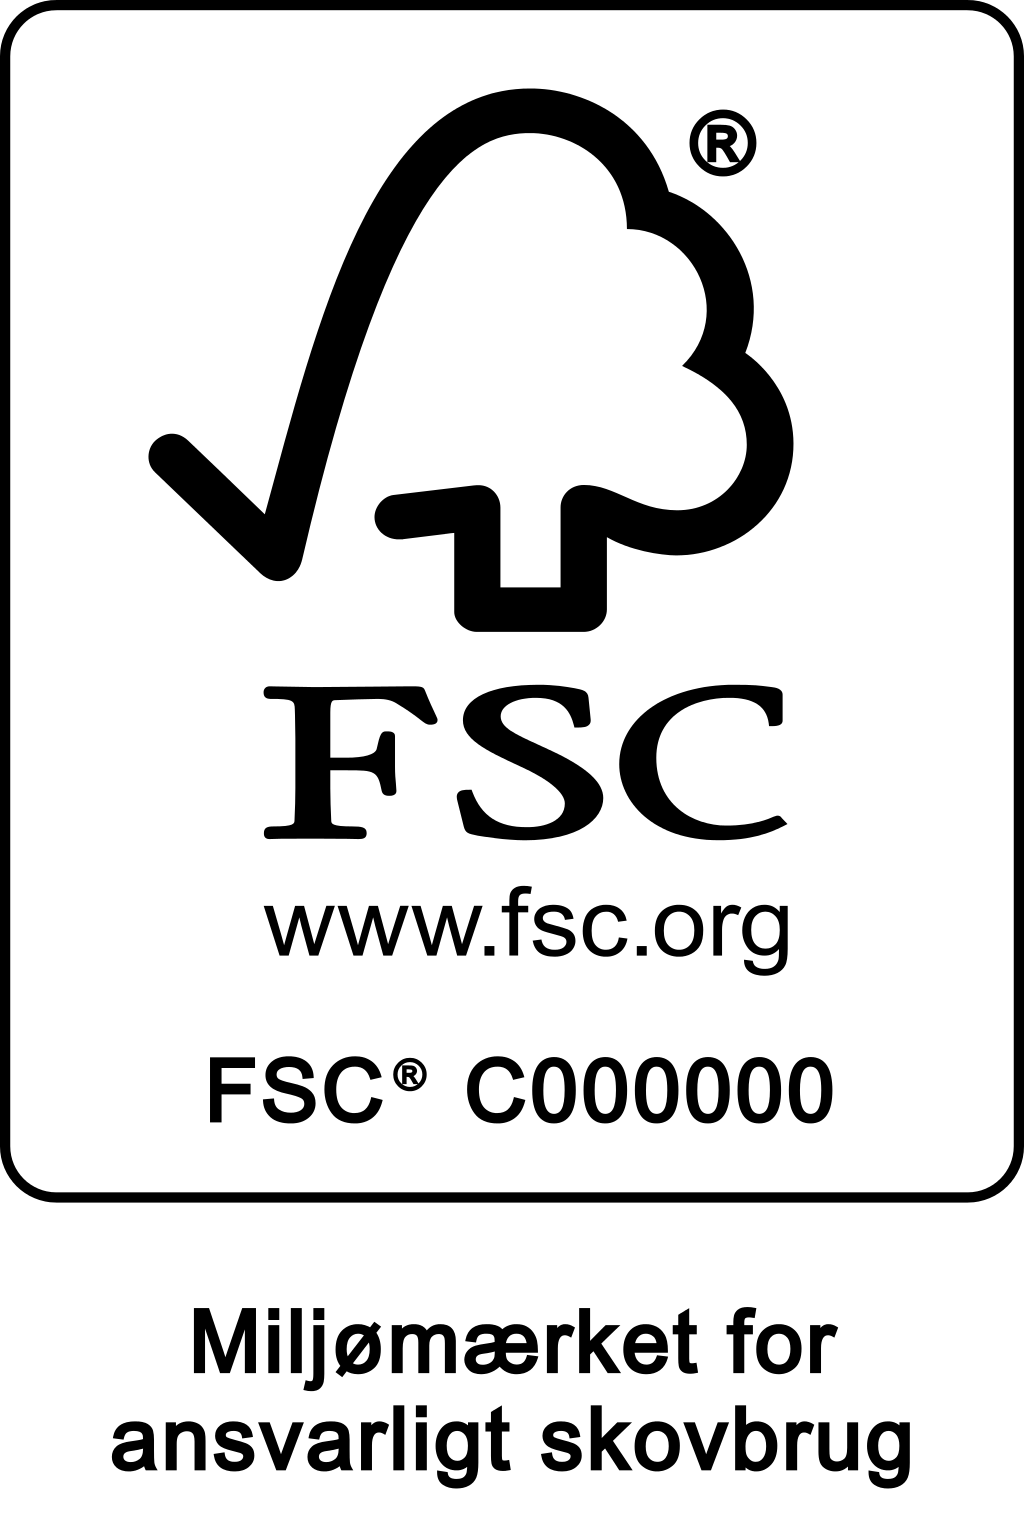 FSC-markedsføringsmærke for certificerede virksomheder